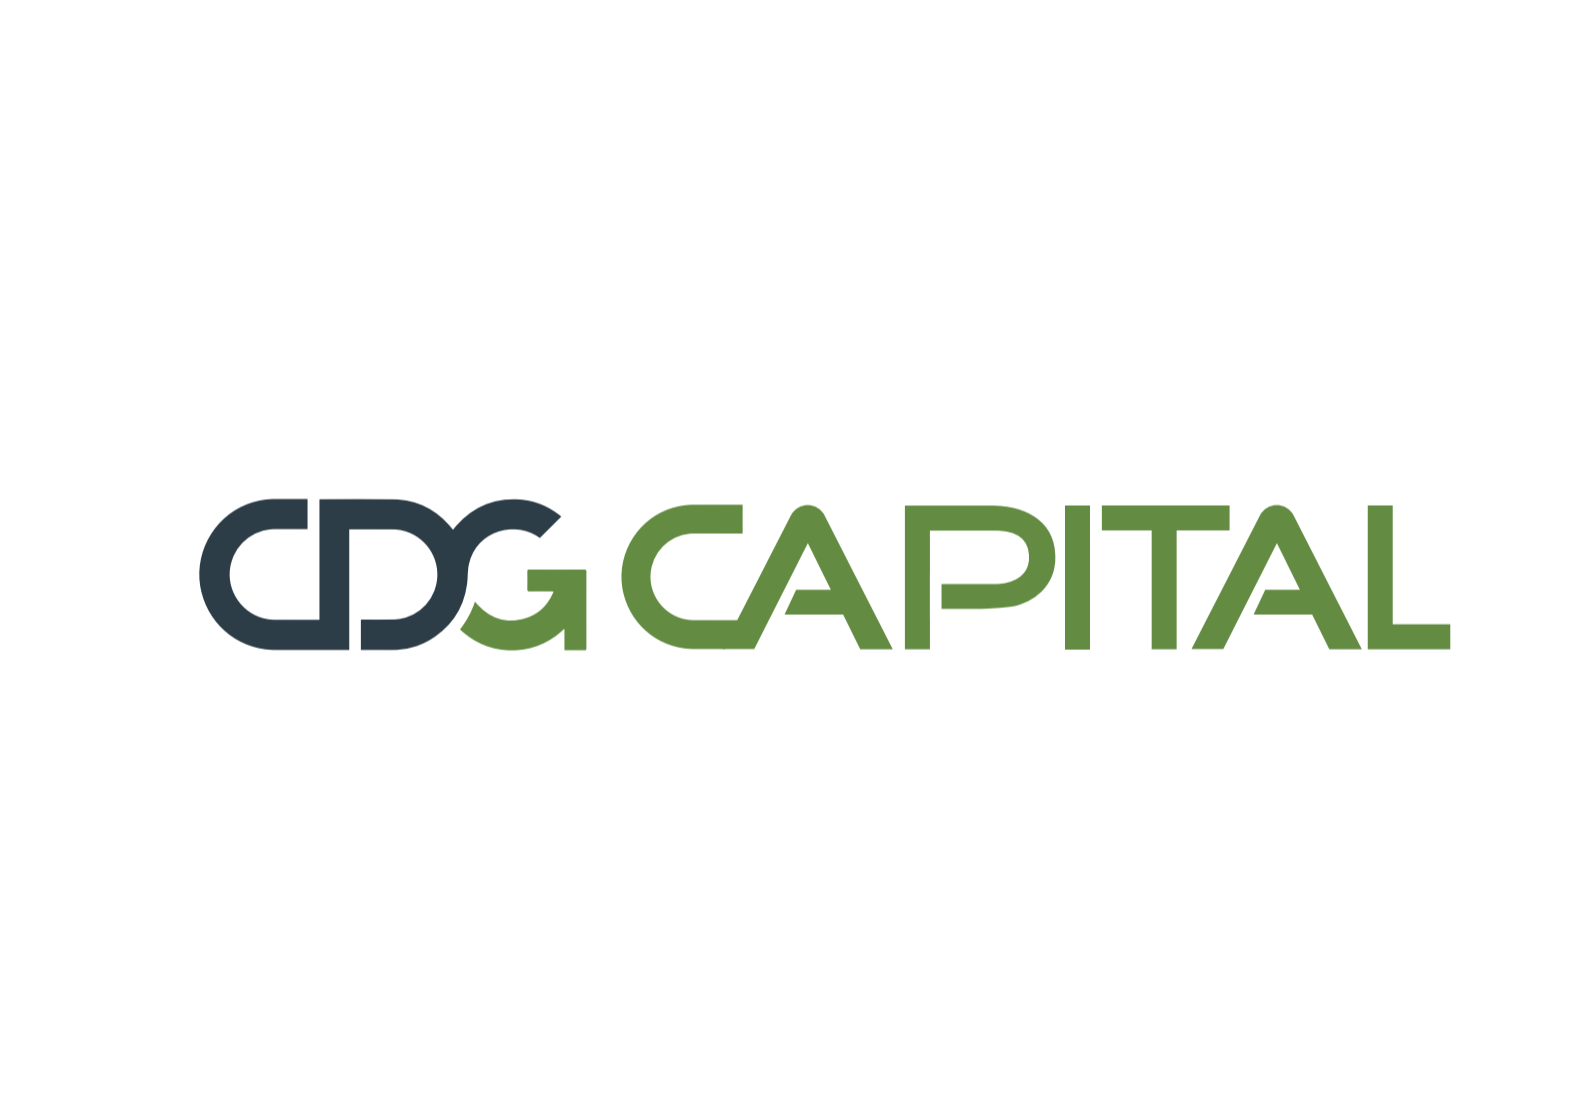 CDG Capital révèle sa nouvelle identité visuelle